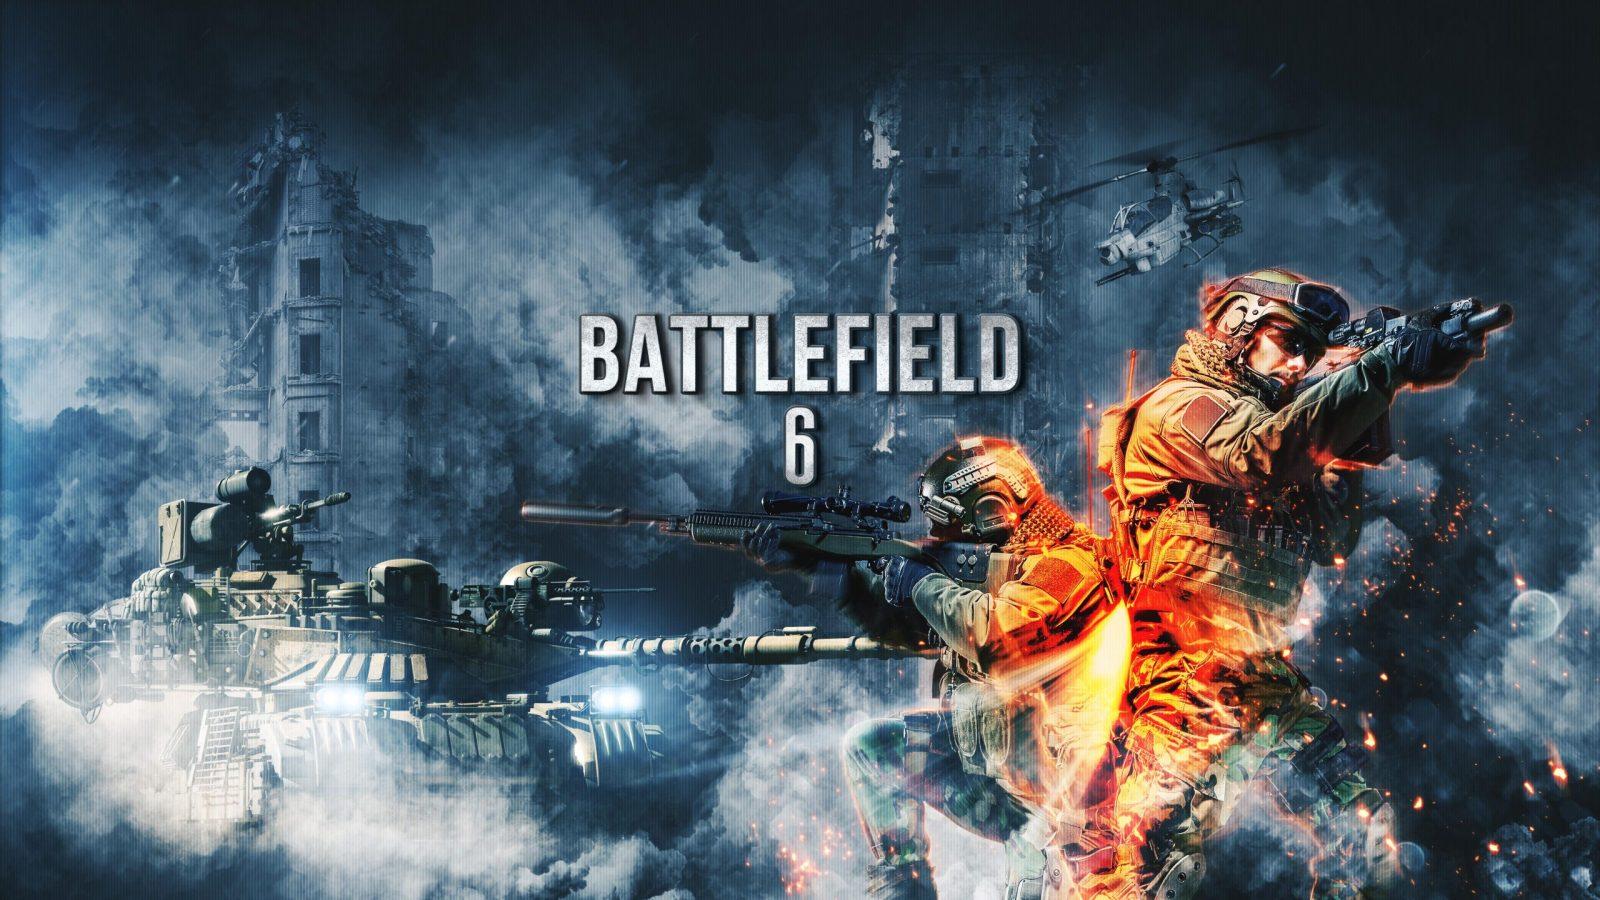 بررسی تمام شایعات پیرامون بازی Battlefield 6